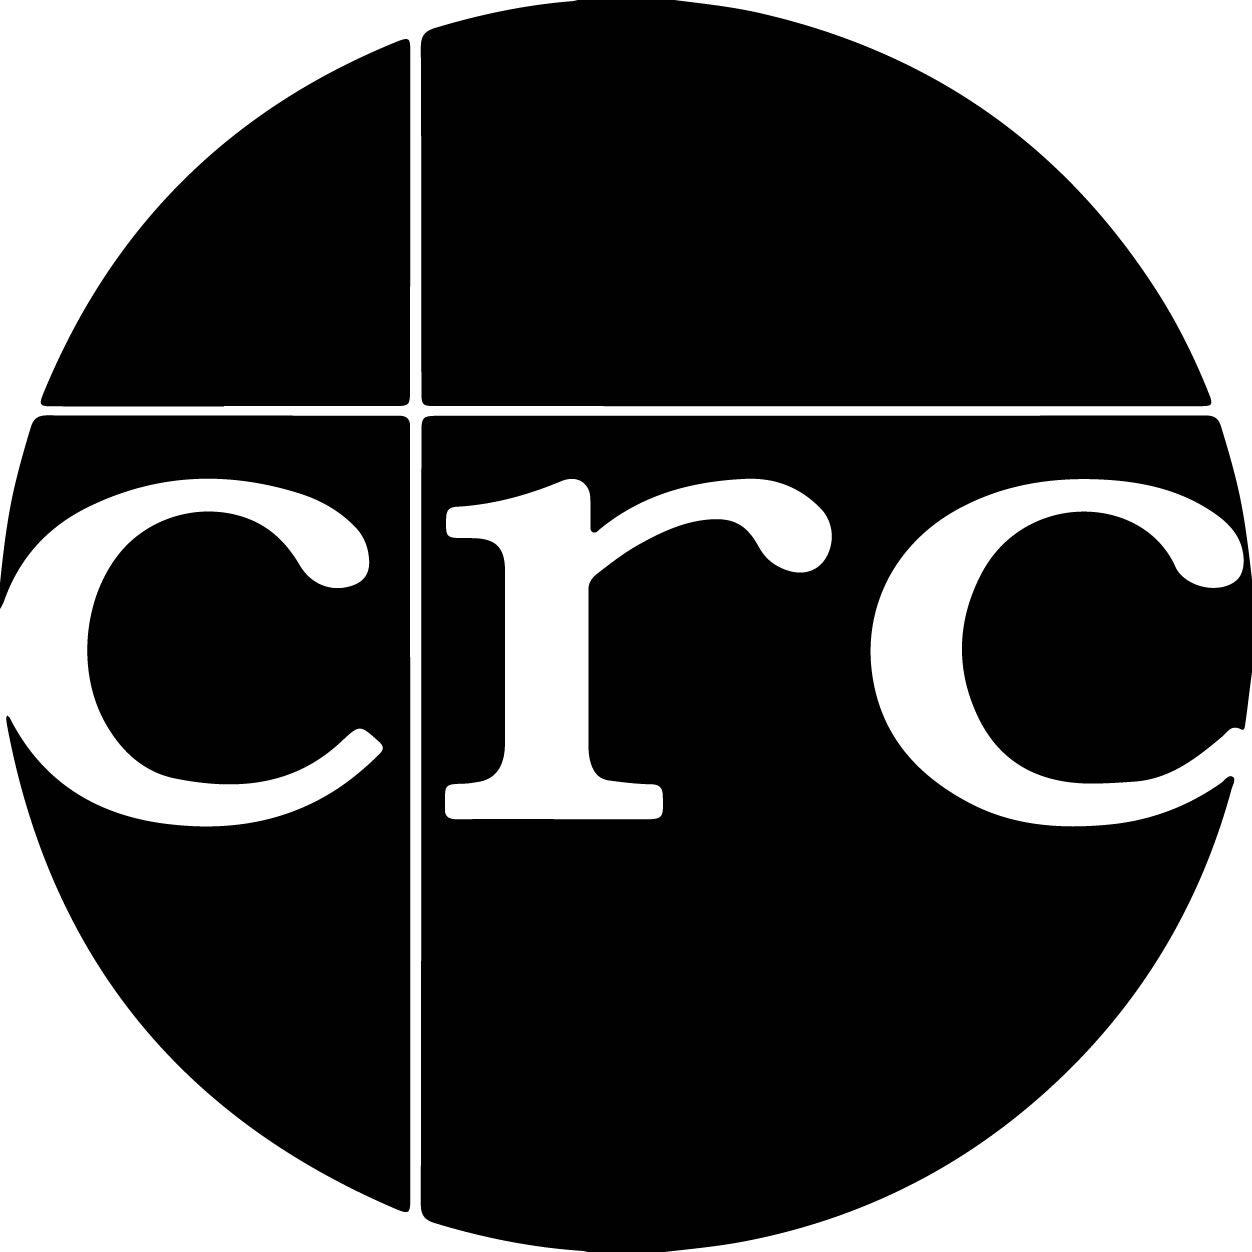 White Christian Logo - Christian revival church Logos